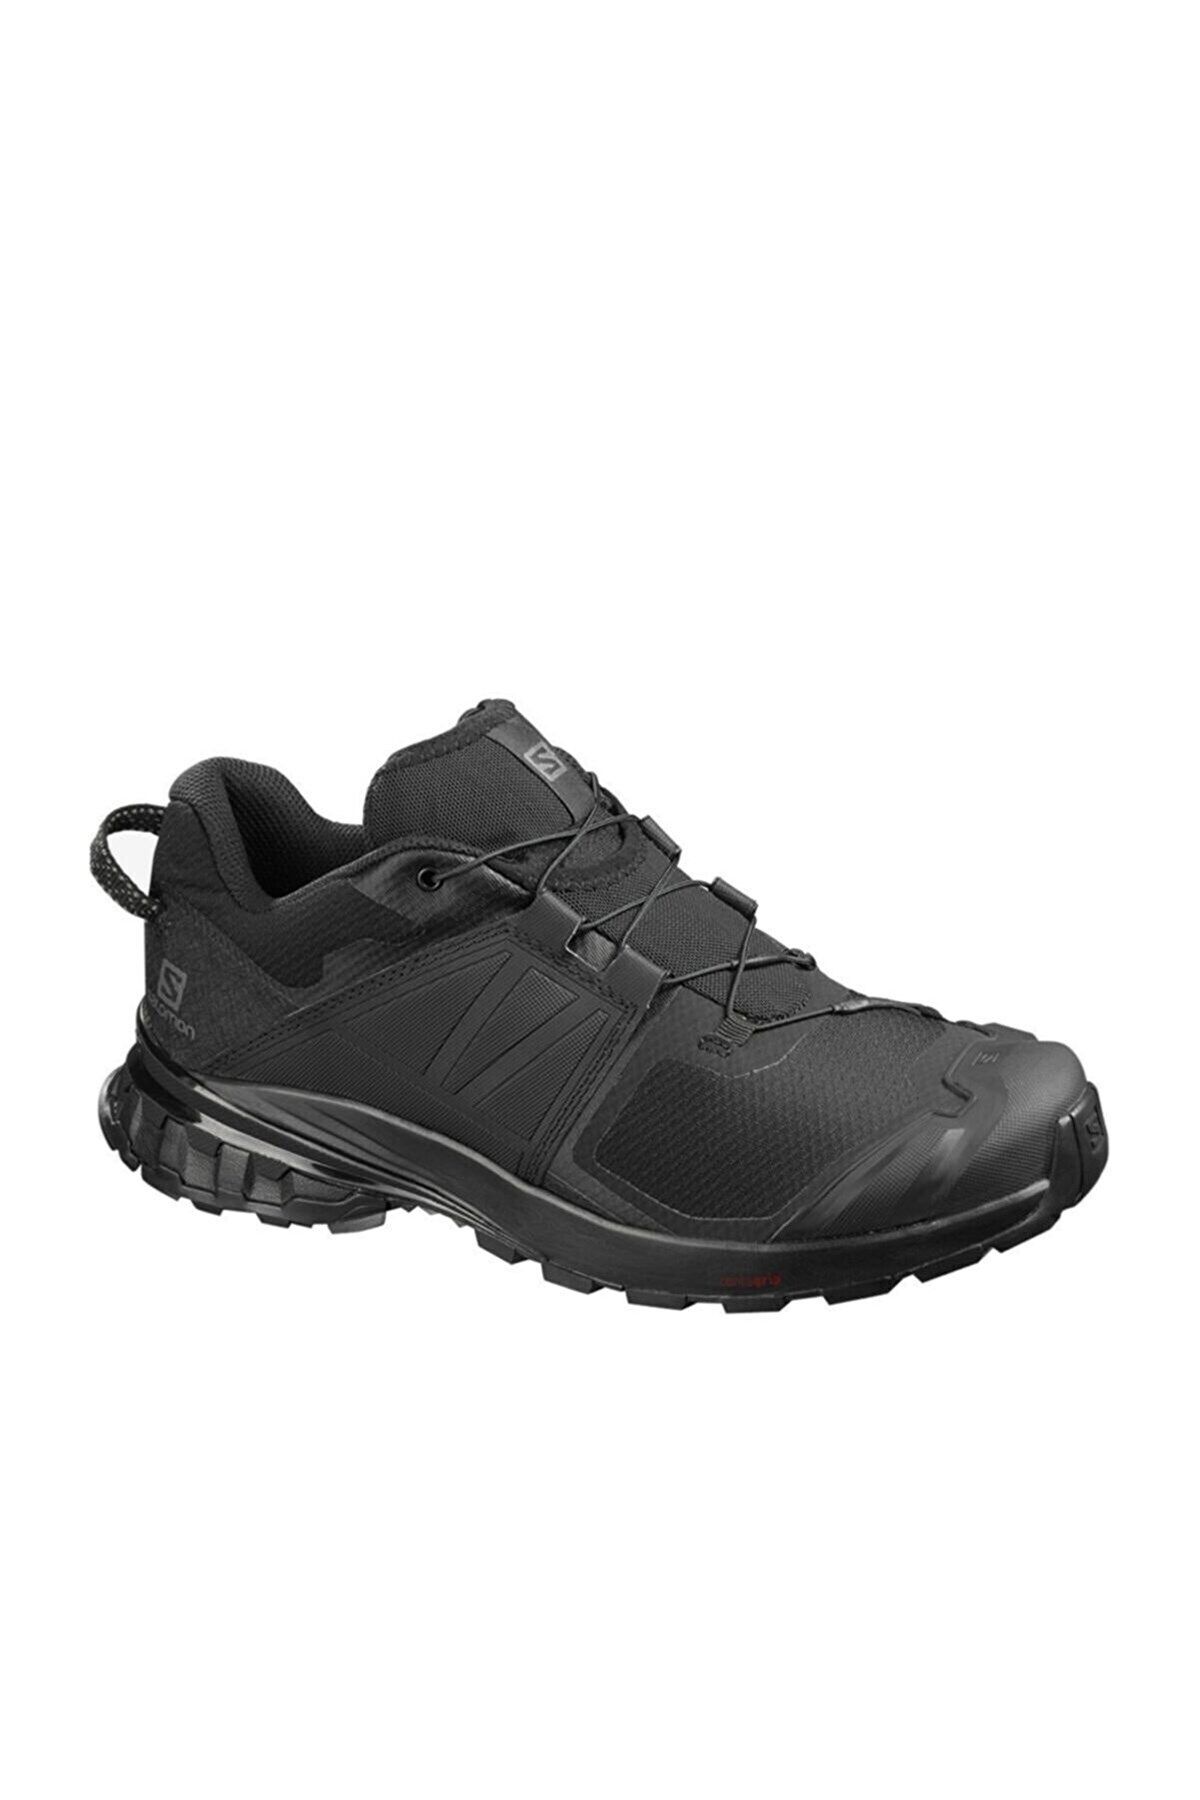 Salomon Xa Wıld L40978700 Erkek Outdoor Ayakkabı - Siyah